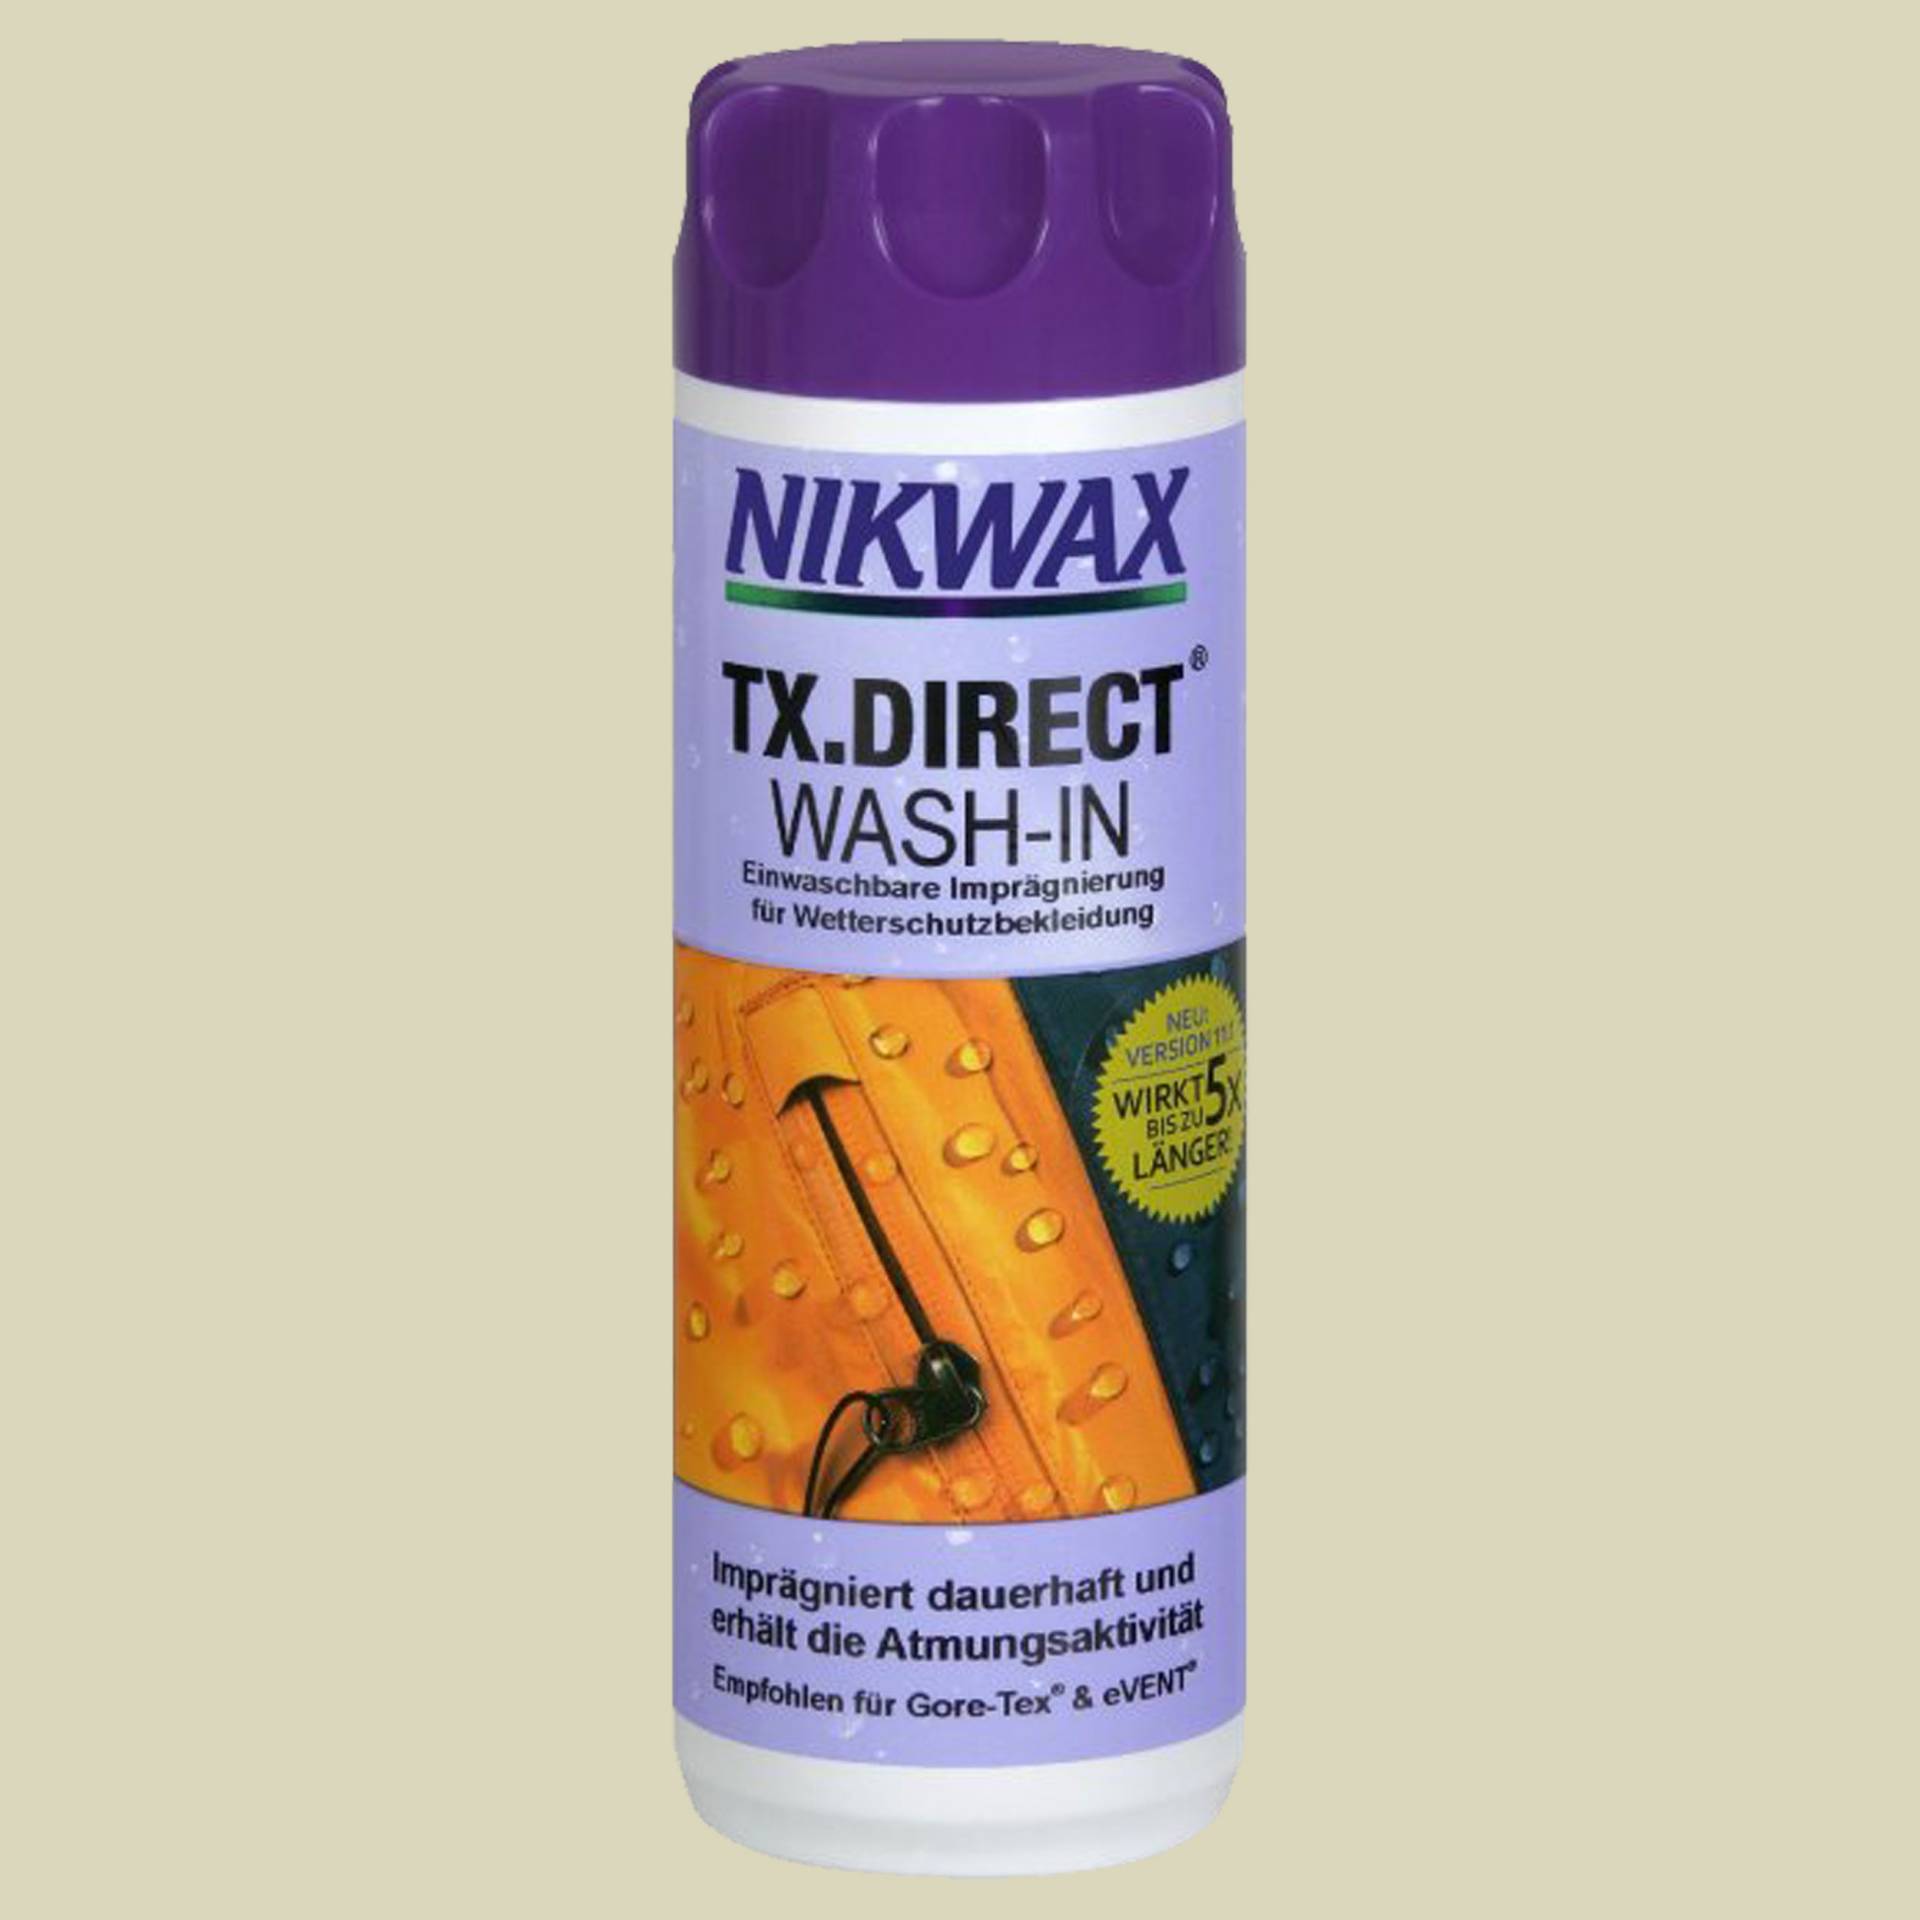 TX.Direct Wash-In 300 ml Inhalt 300 ml von Nikwax